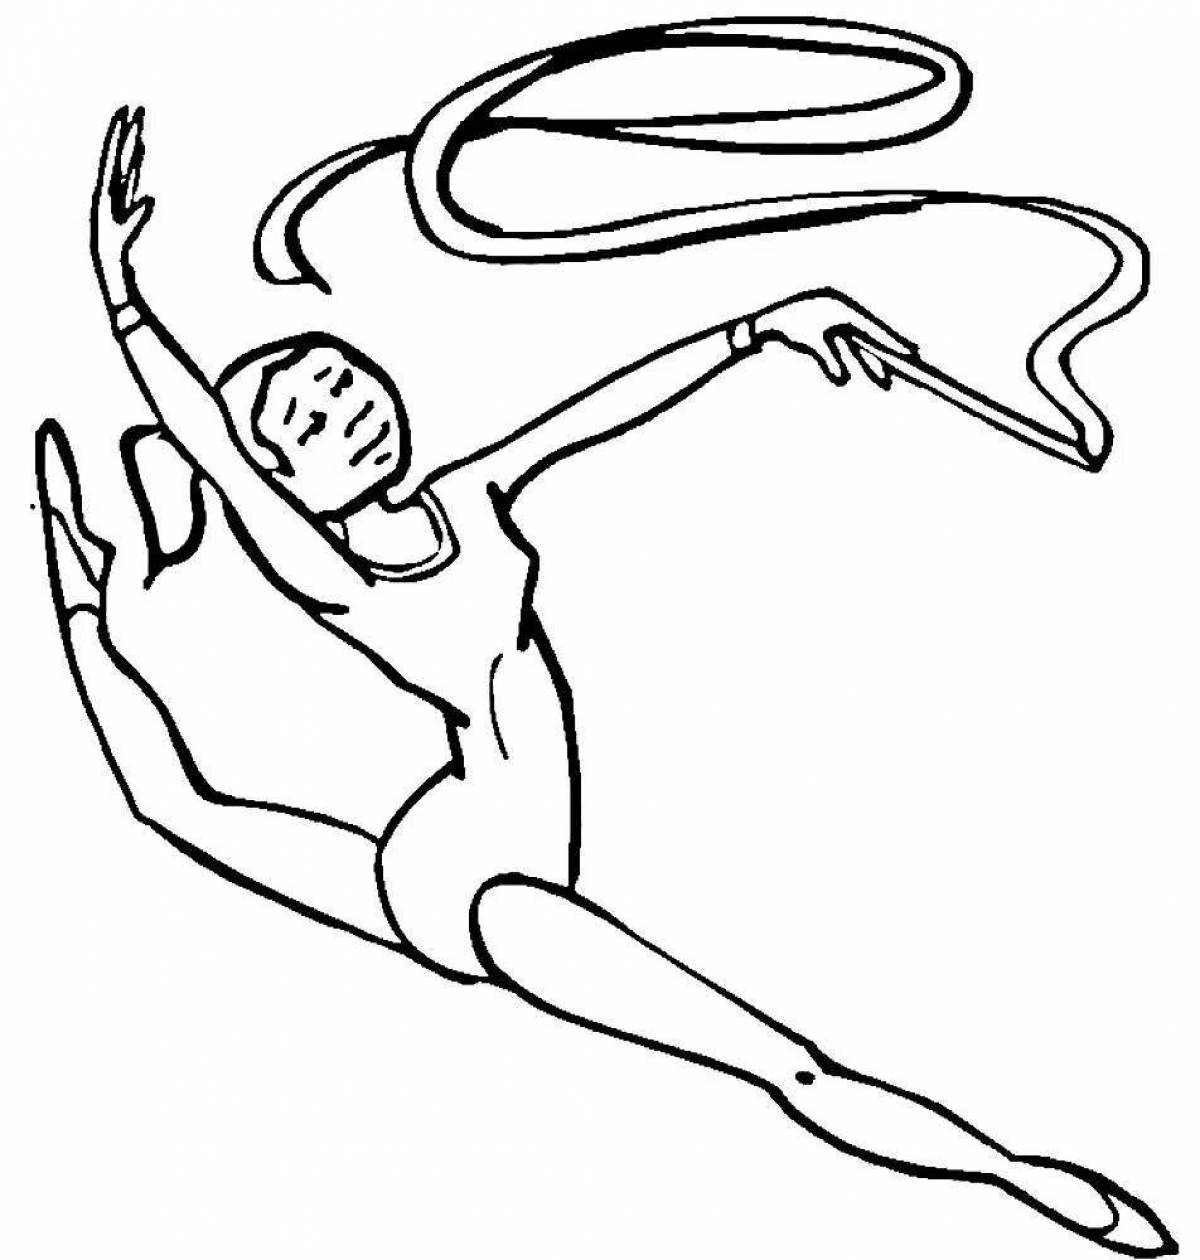 Rhythmic gymnast with ribbon